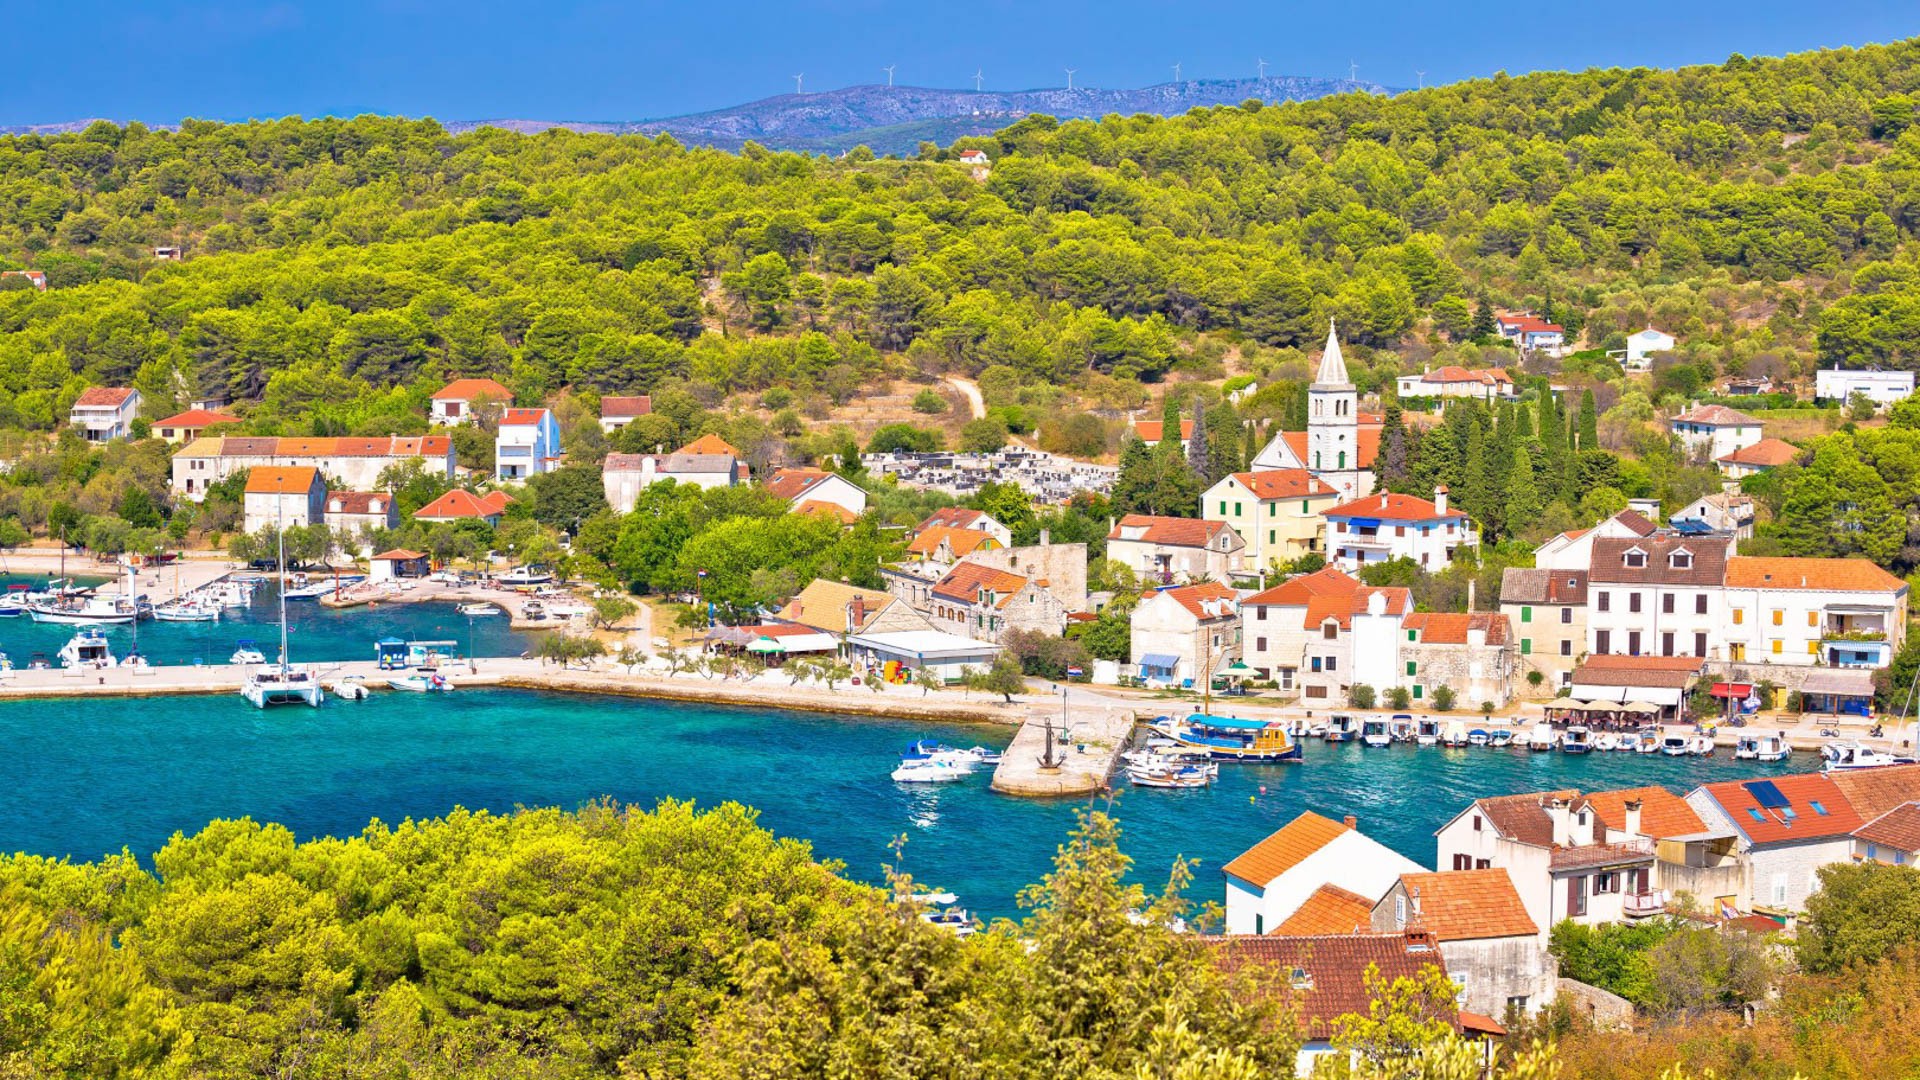 Zlarin - Adriatic Sea | Croatia Cruise Croatia Cruise